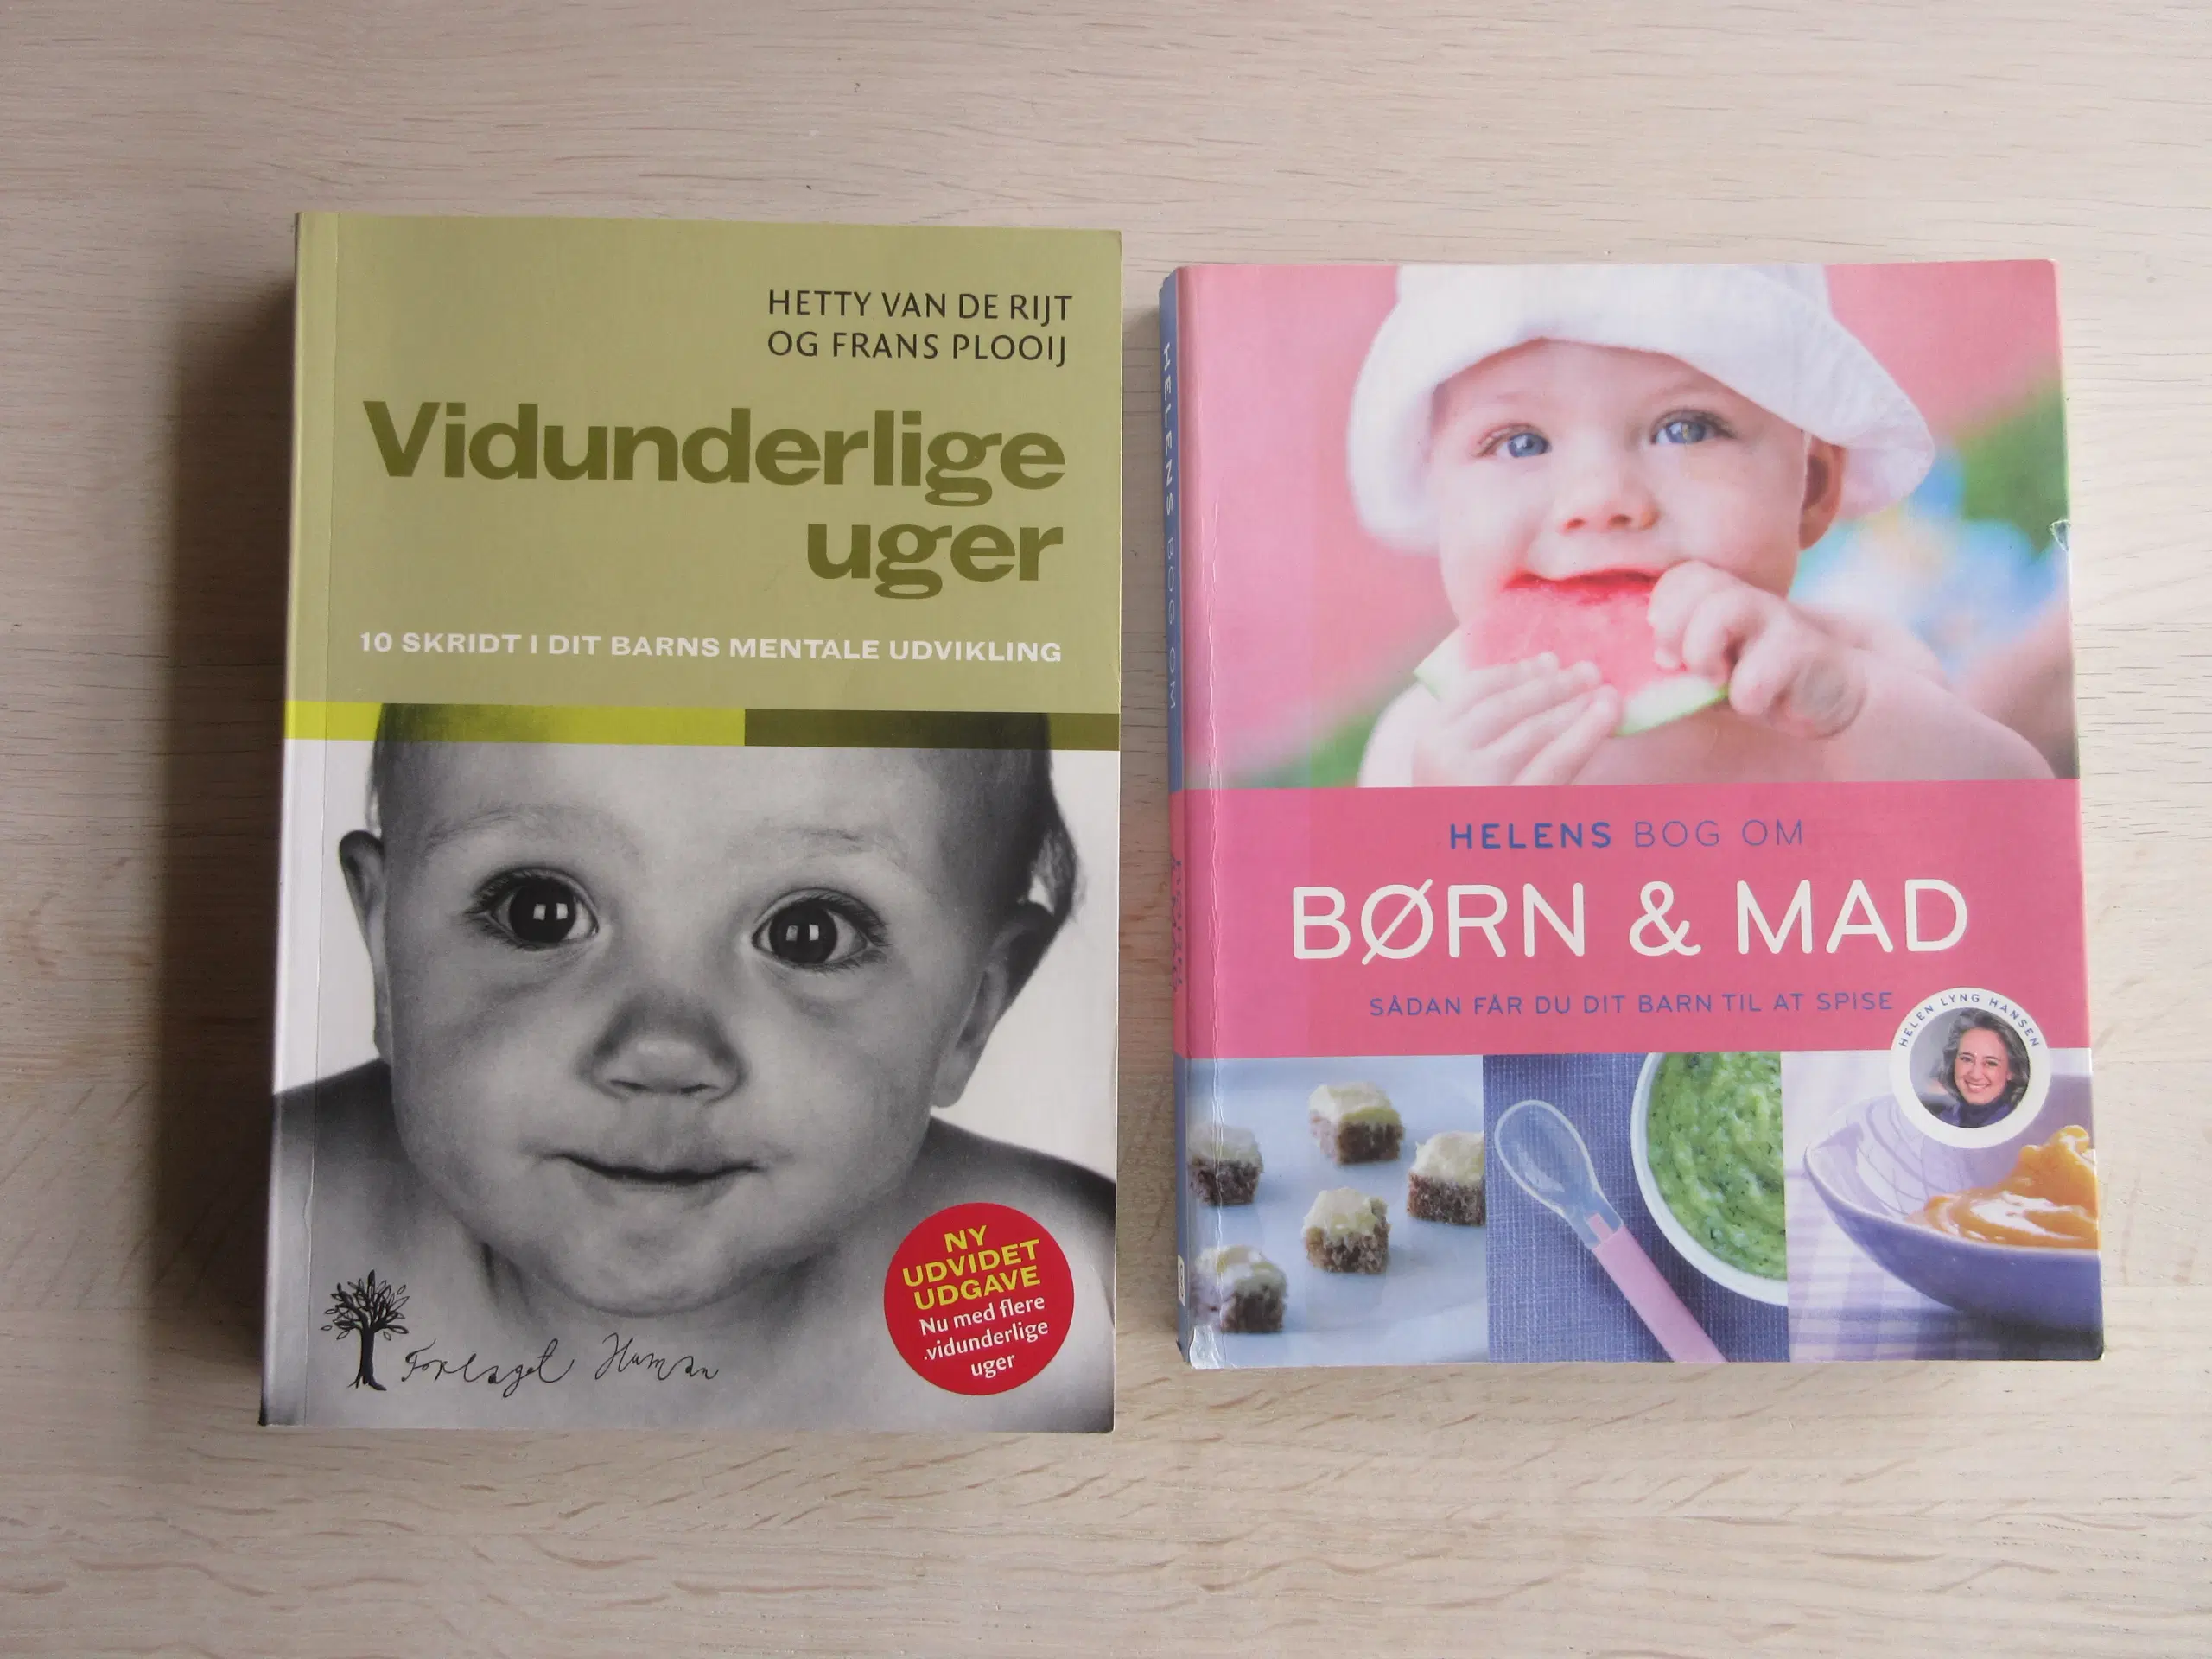 Gravid - baby - småbørn bøger ;-)